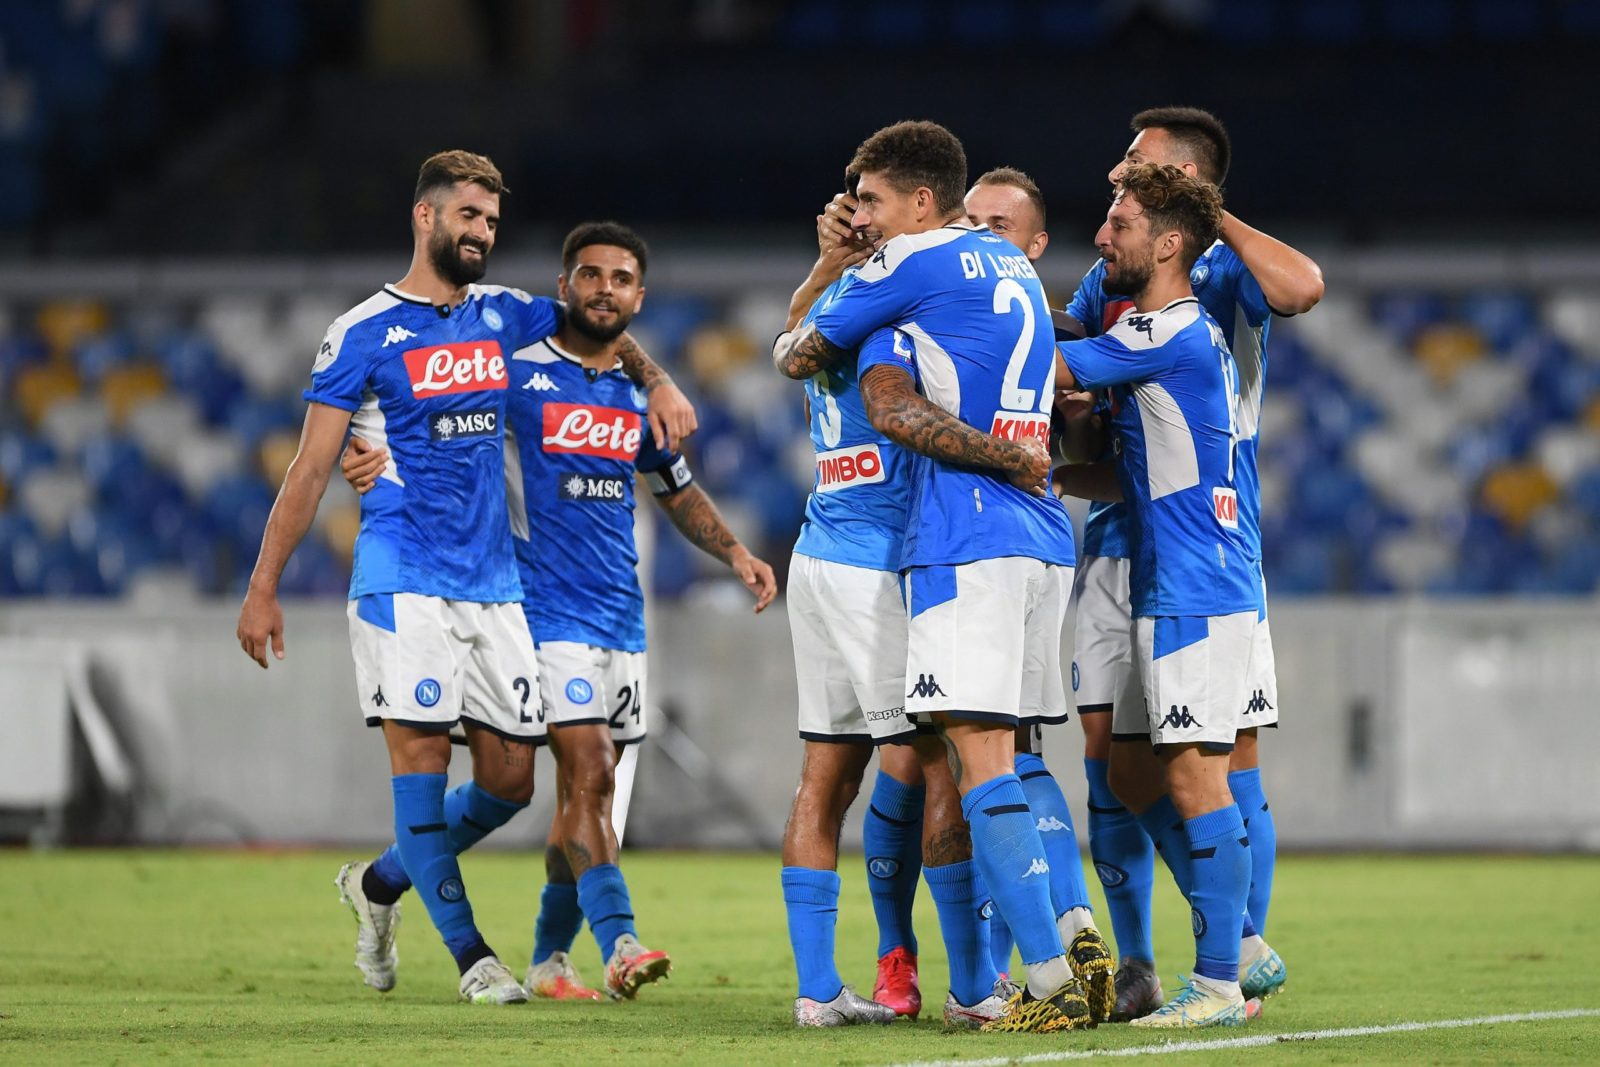 Le Lega Calcio non cambia idea, il Napoli perderà 3-0 a tavolino, regole decise e squadra che non si presenta perde